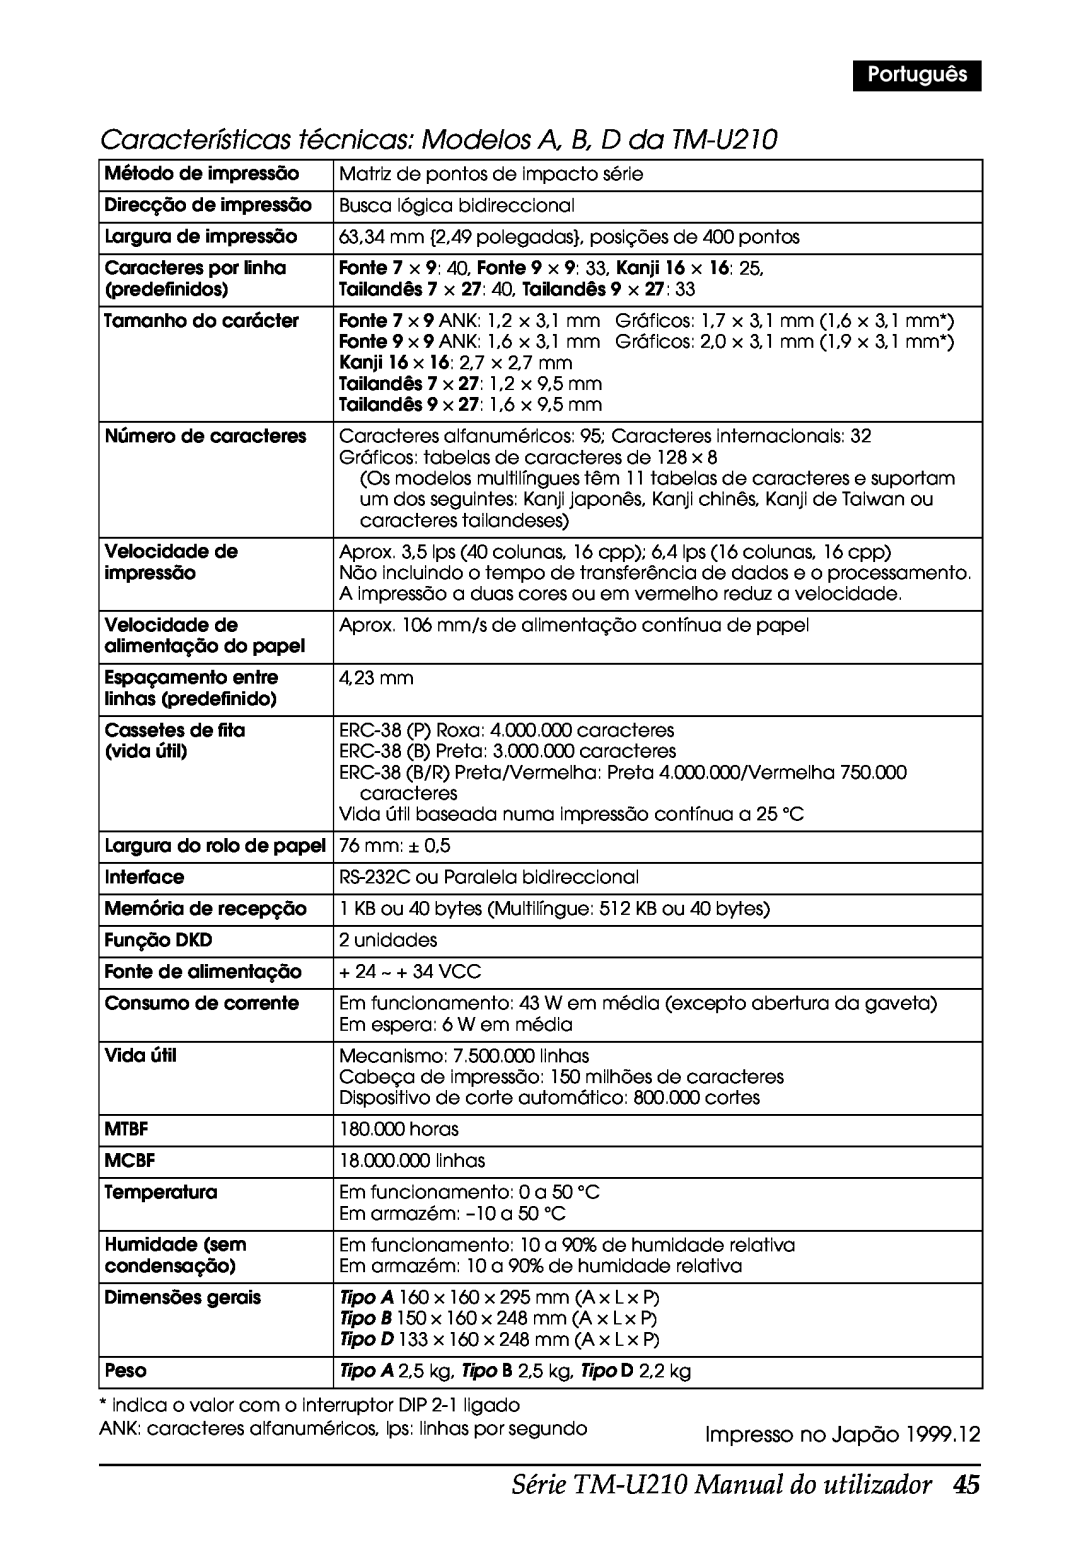 Epson M119A, M119B Série TM-U210 Manual do utilizador, Características técnicas Modelos A, B, D da TM-U210, Português 